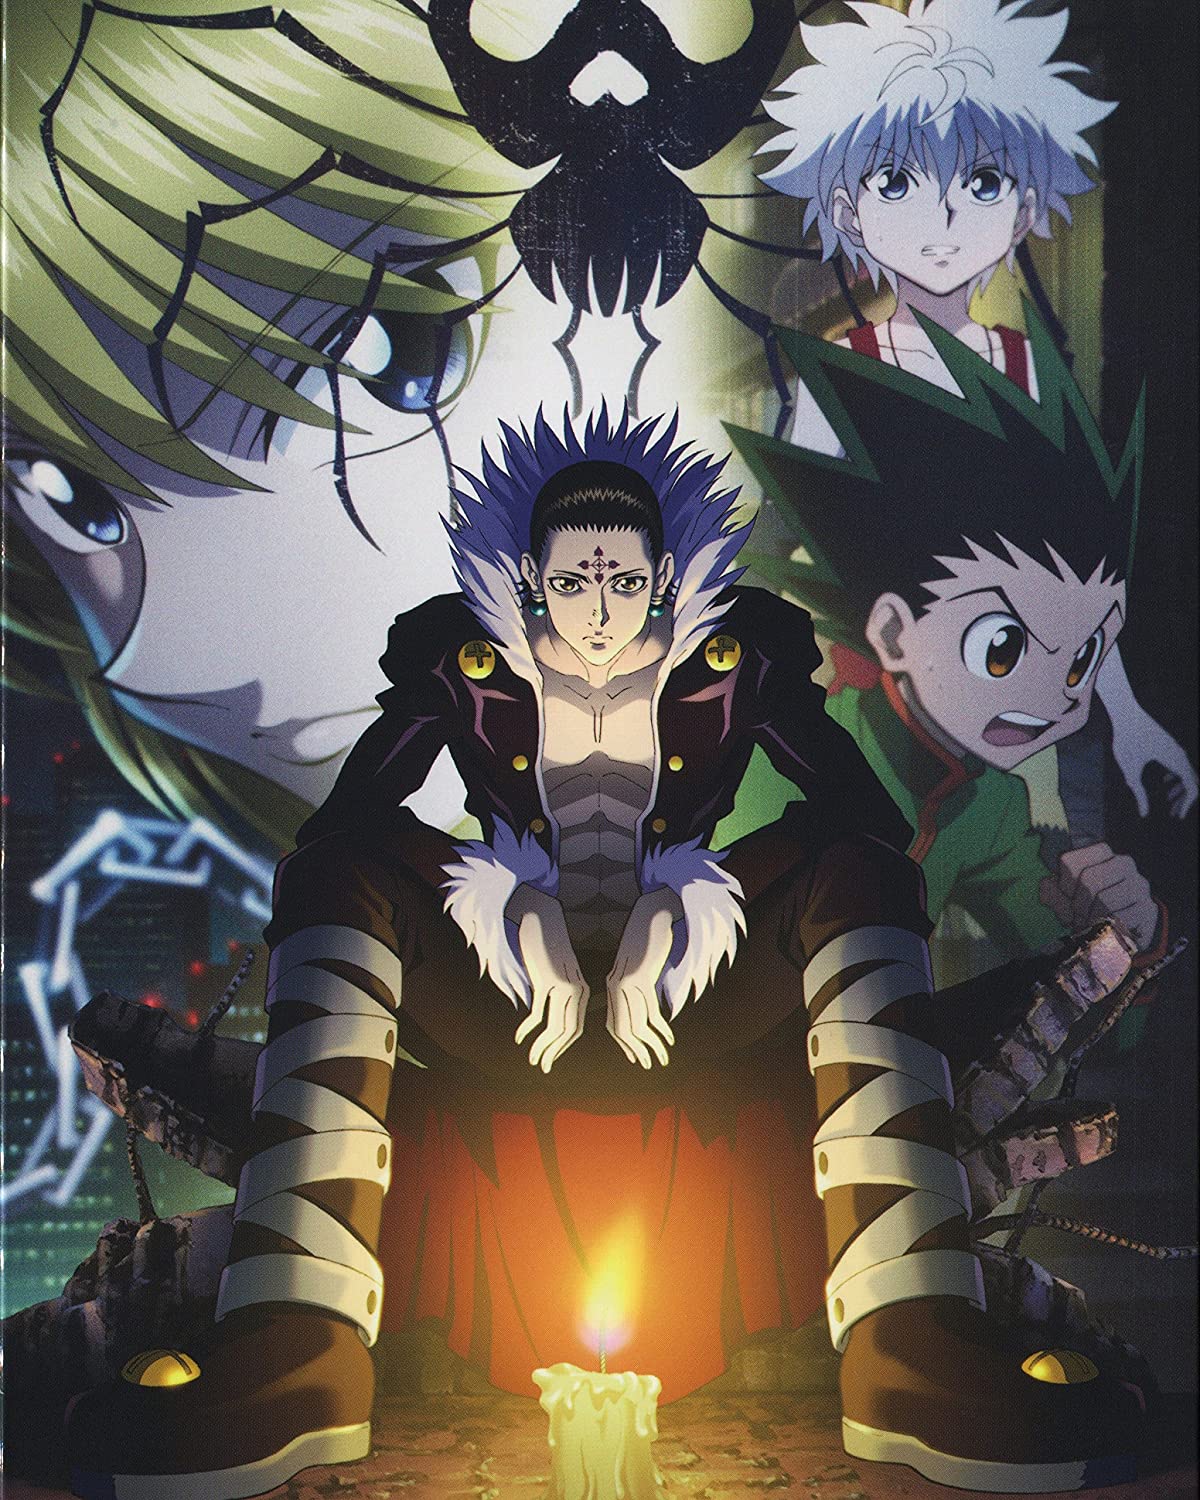 Hunter X Hunter Poster Anime Neferpitou Gon Killua Fight Art Print 16x20 Inches: Posters & Prints